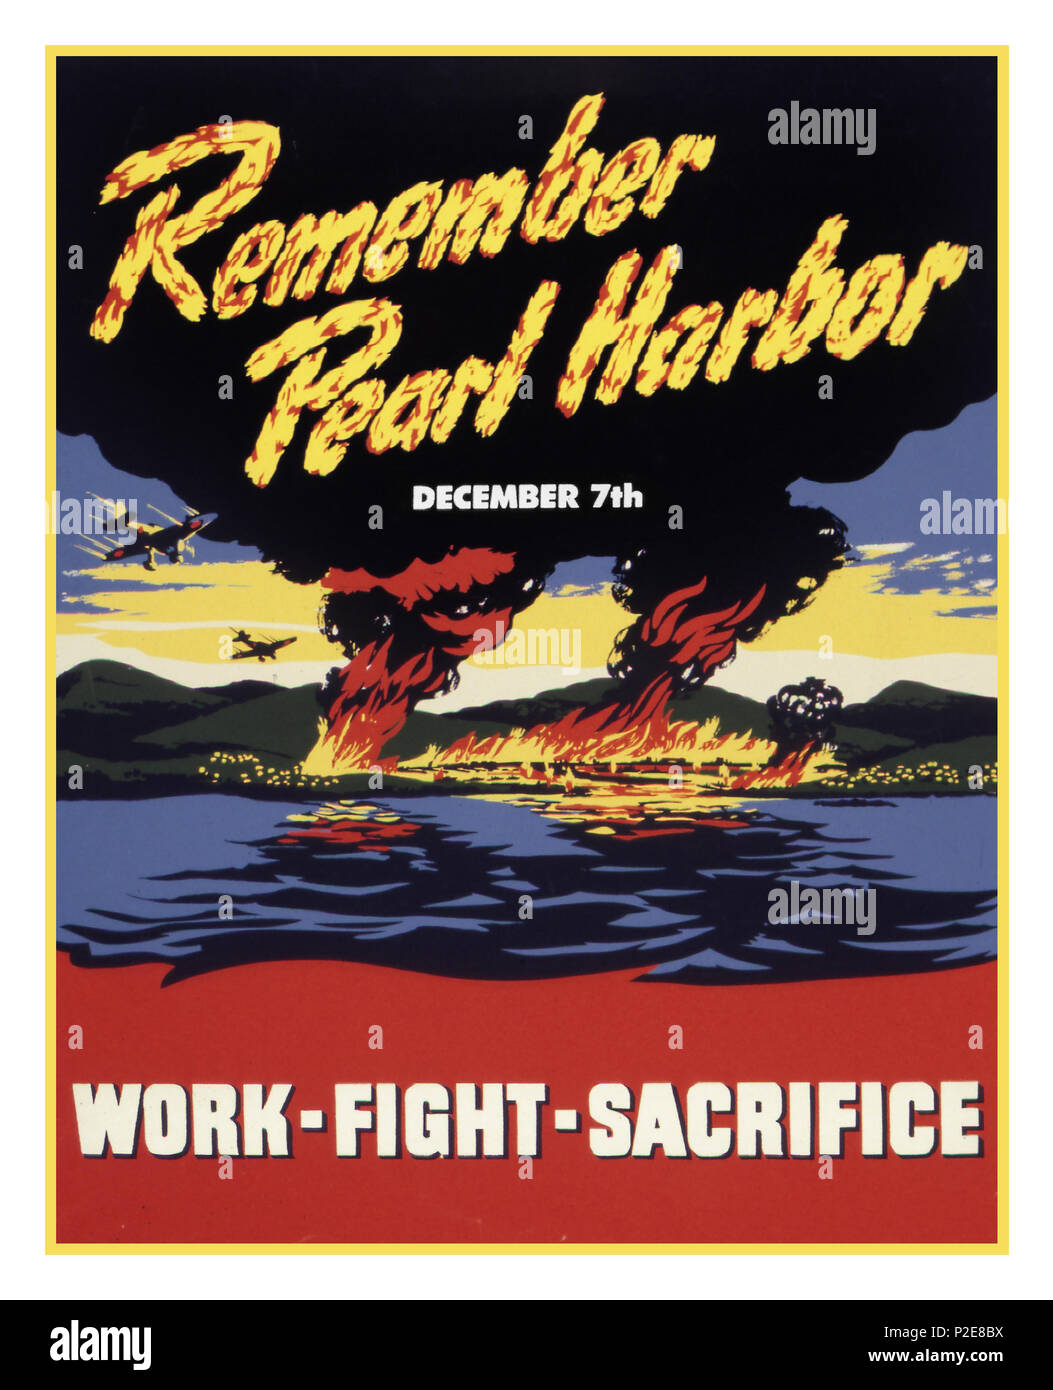 American Vintage WW2 affiche de recrutement de Propagande 'Remember Pearl Harbor' le 7 décembre 1941 'TRAVAILLER' SACRIFICE LUTTE un infâme attaque surprise par le Japon sur les forces de la Marine américaine à Pearl Harbor, une terrible guerre d'usure a suivi, qui a finalement pris fin avec la force brutale du Japon et ses personnes civiles en reddition, après les bombes atomiques ont été larguées sur Hiroshima et Nagasaki... Banque D'Images